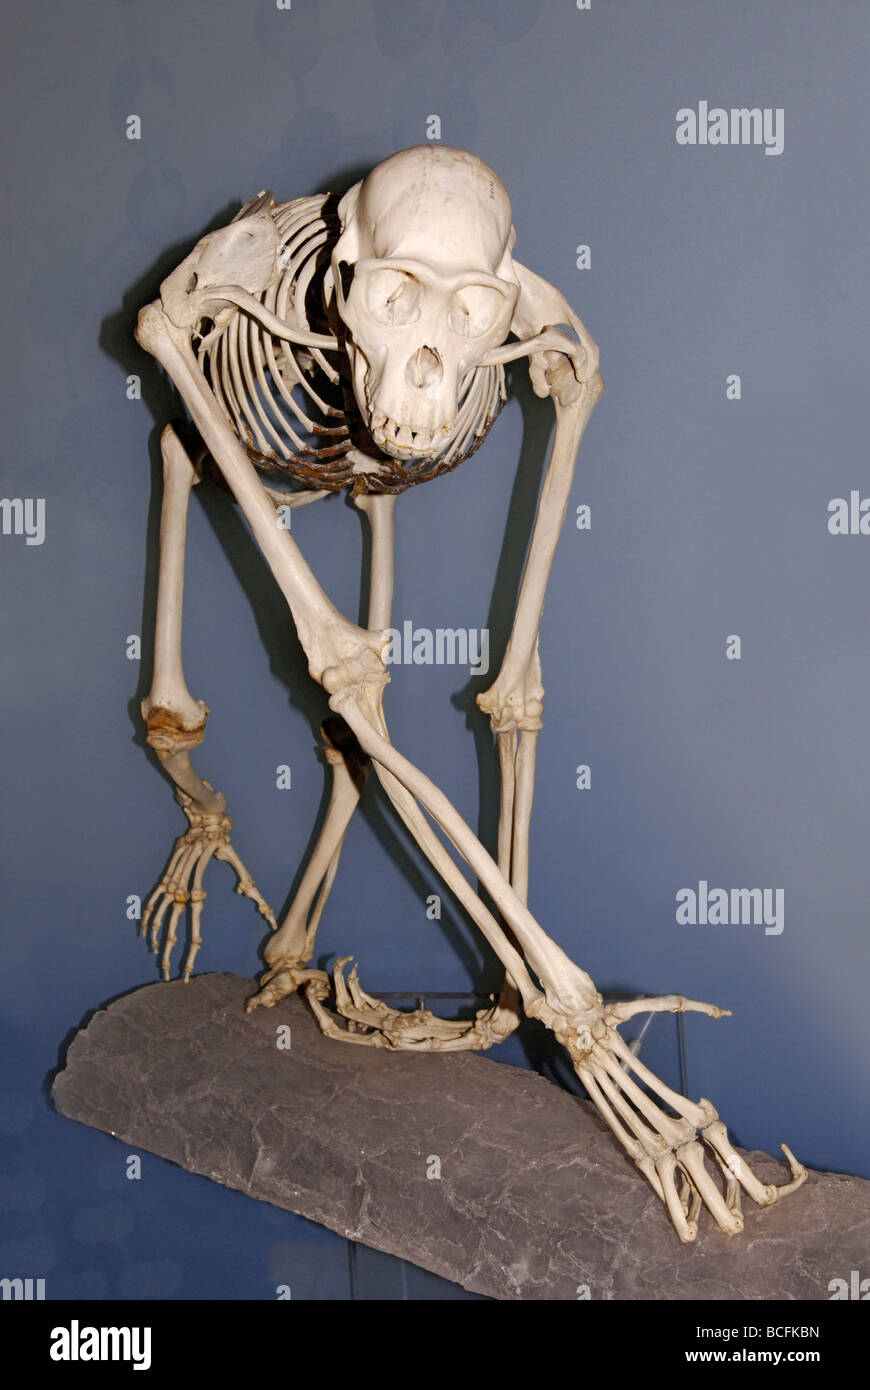 Skeleton of the common chimpanzee, Pan troglodytes Stock Photo